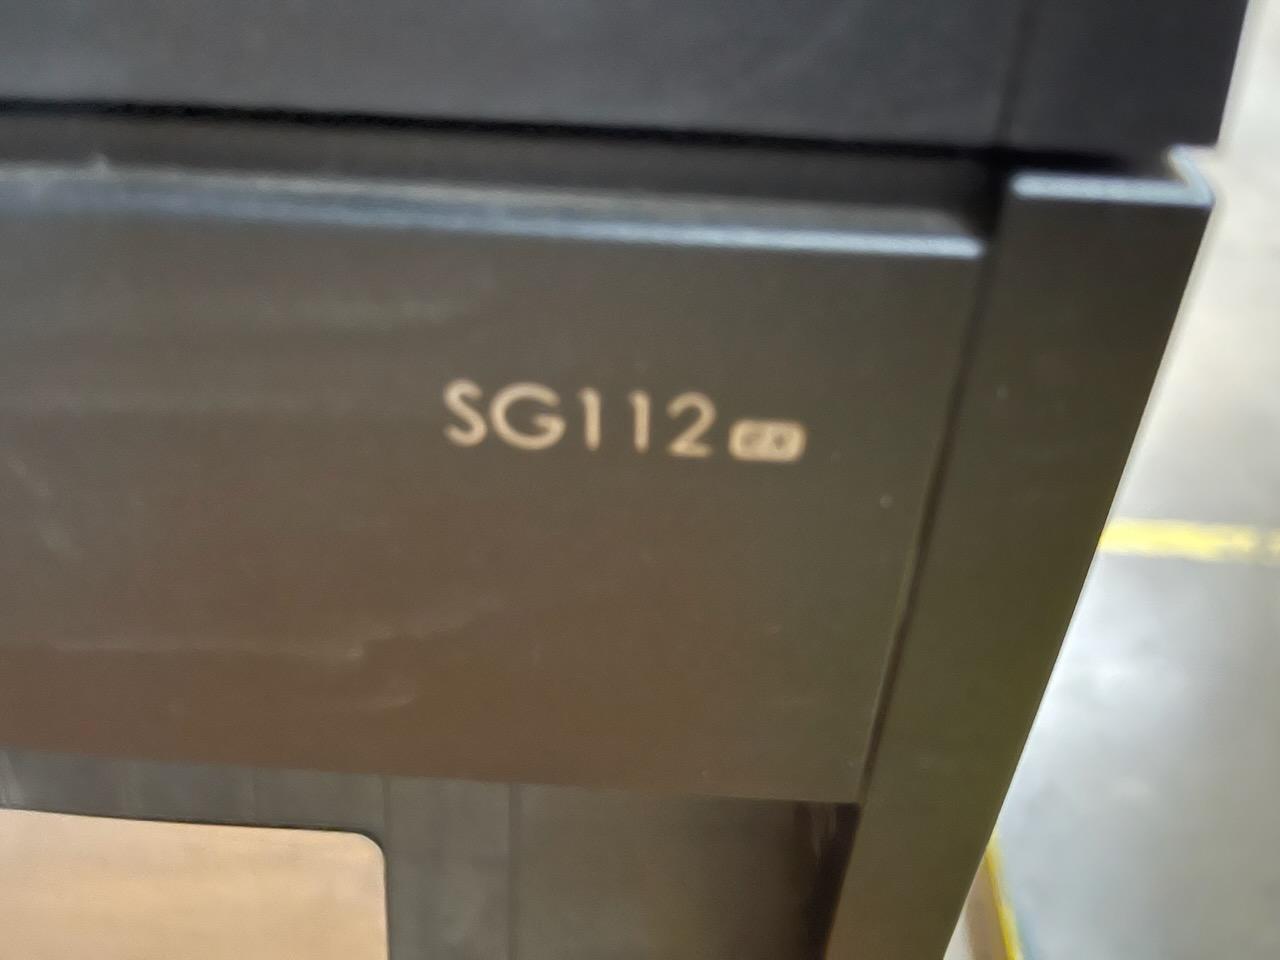 SATO - SG112 ex Barcode Printer